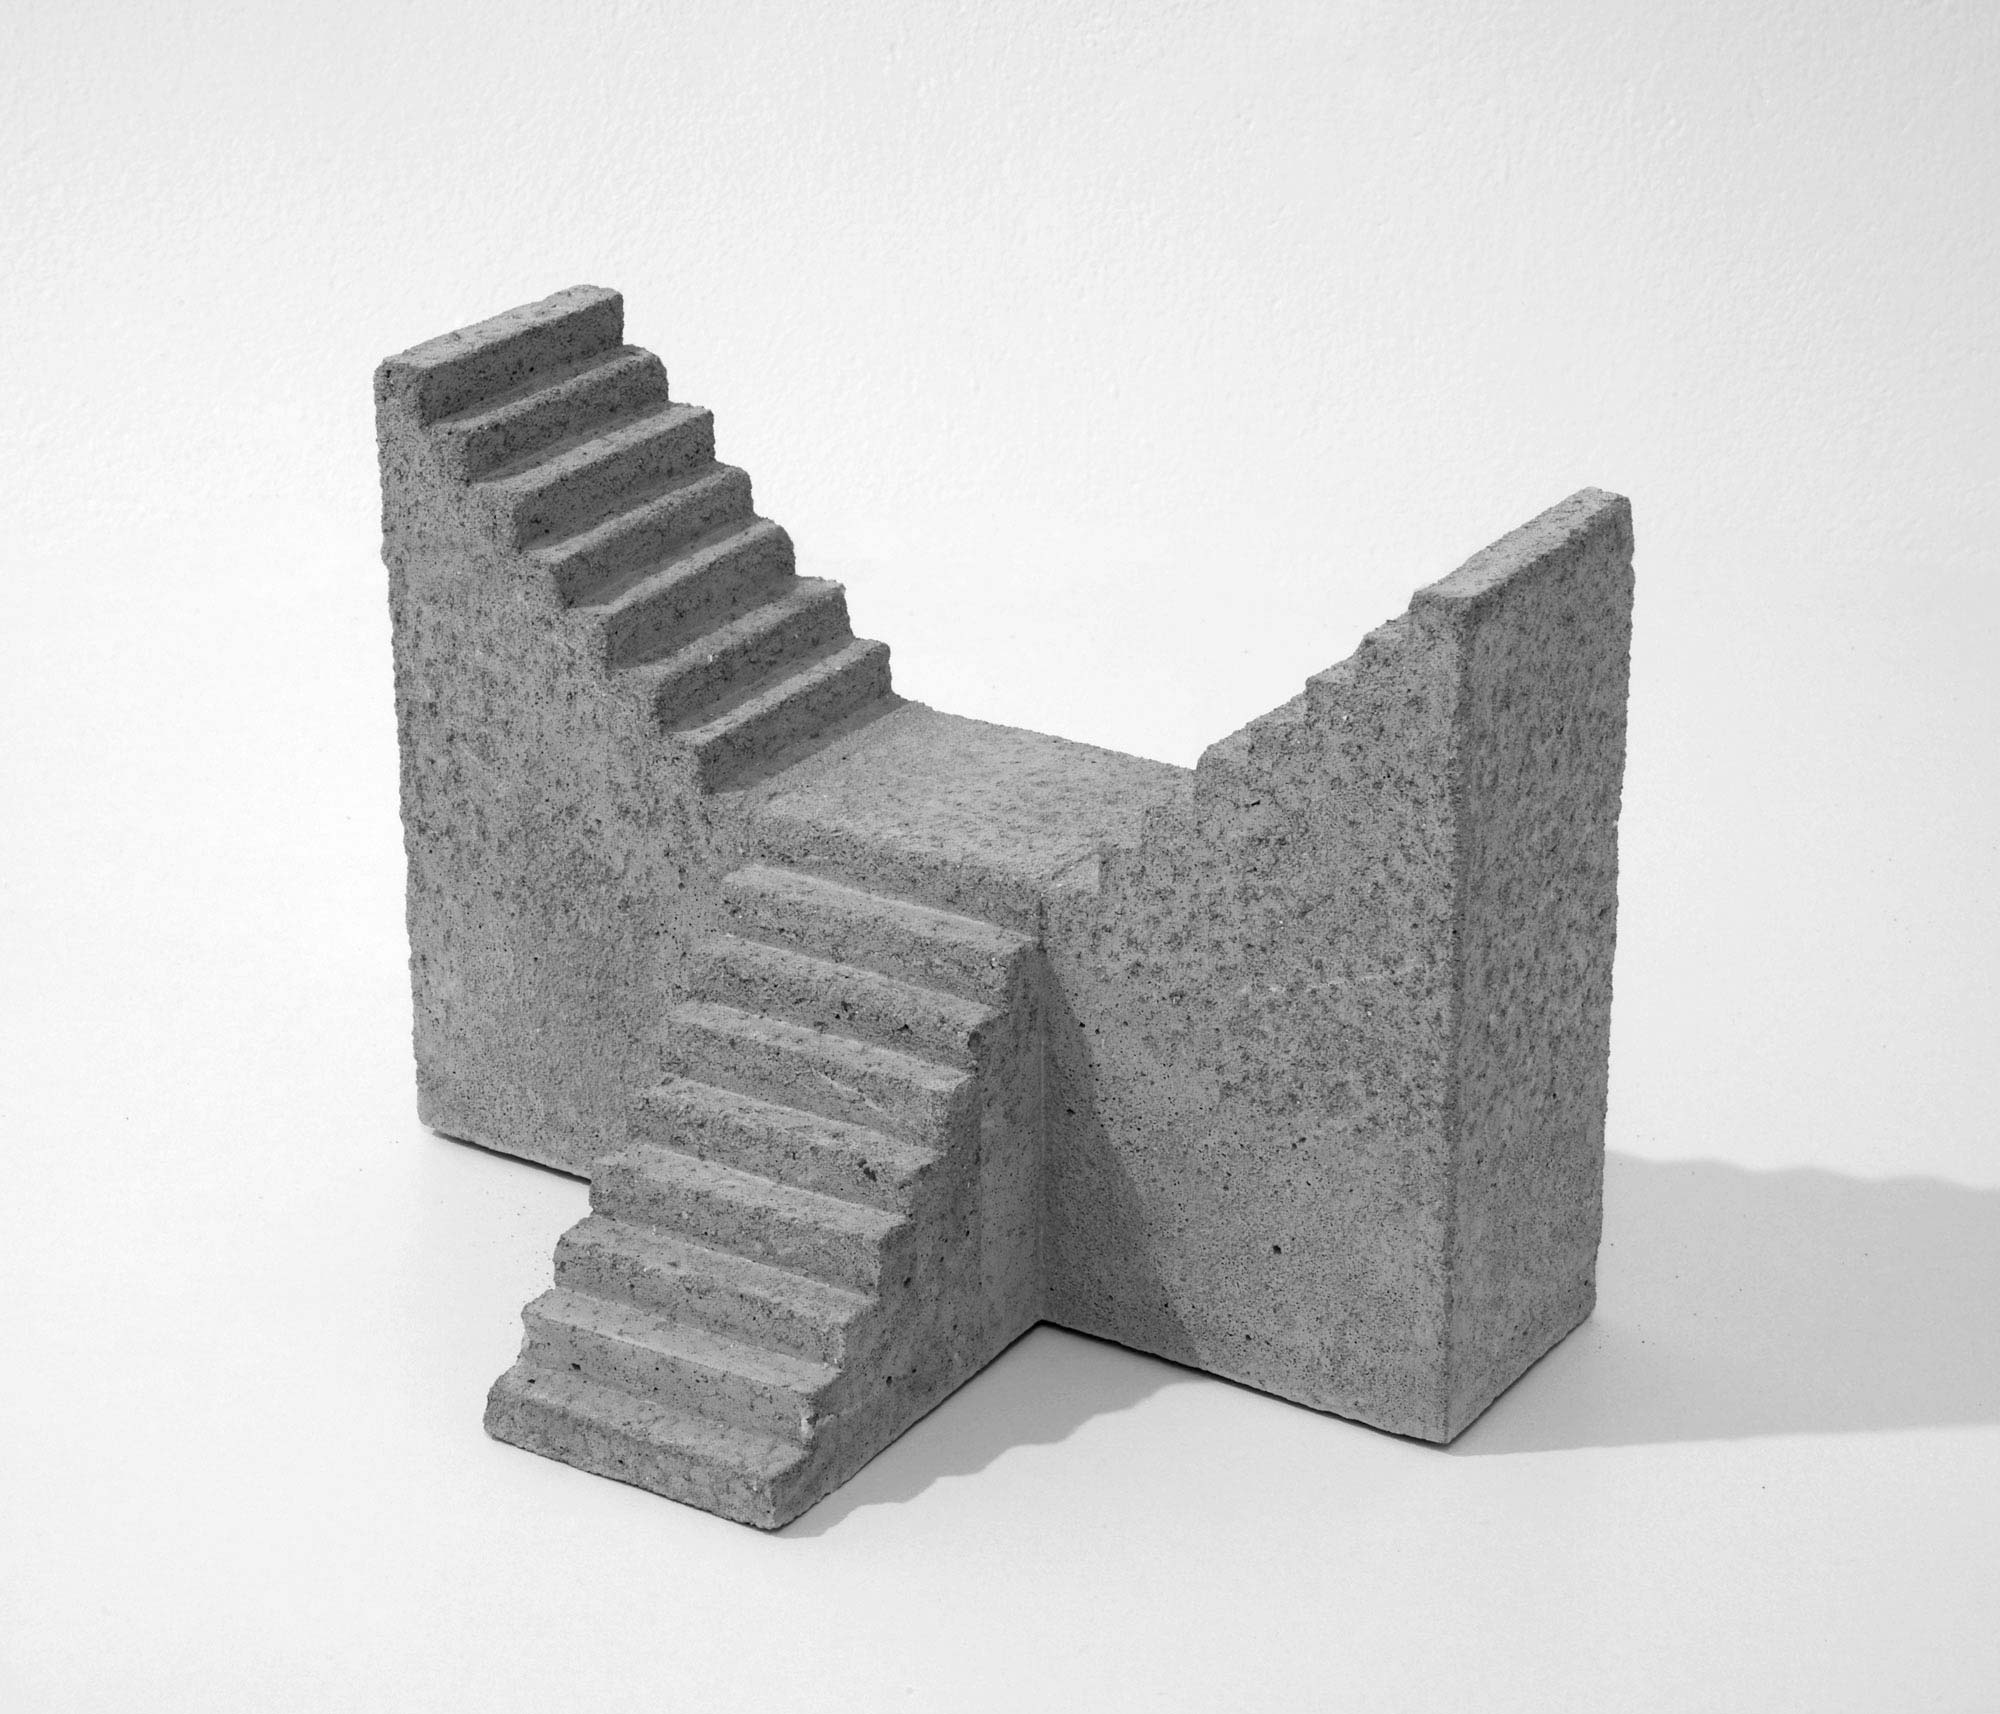 mattia listowski art design objet décoration sculpture béton moulage micro architecture maquette escalier simple double édition limitée numérotée signée paris bruxelles 2019